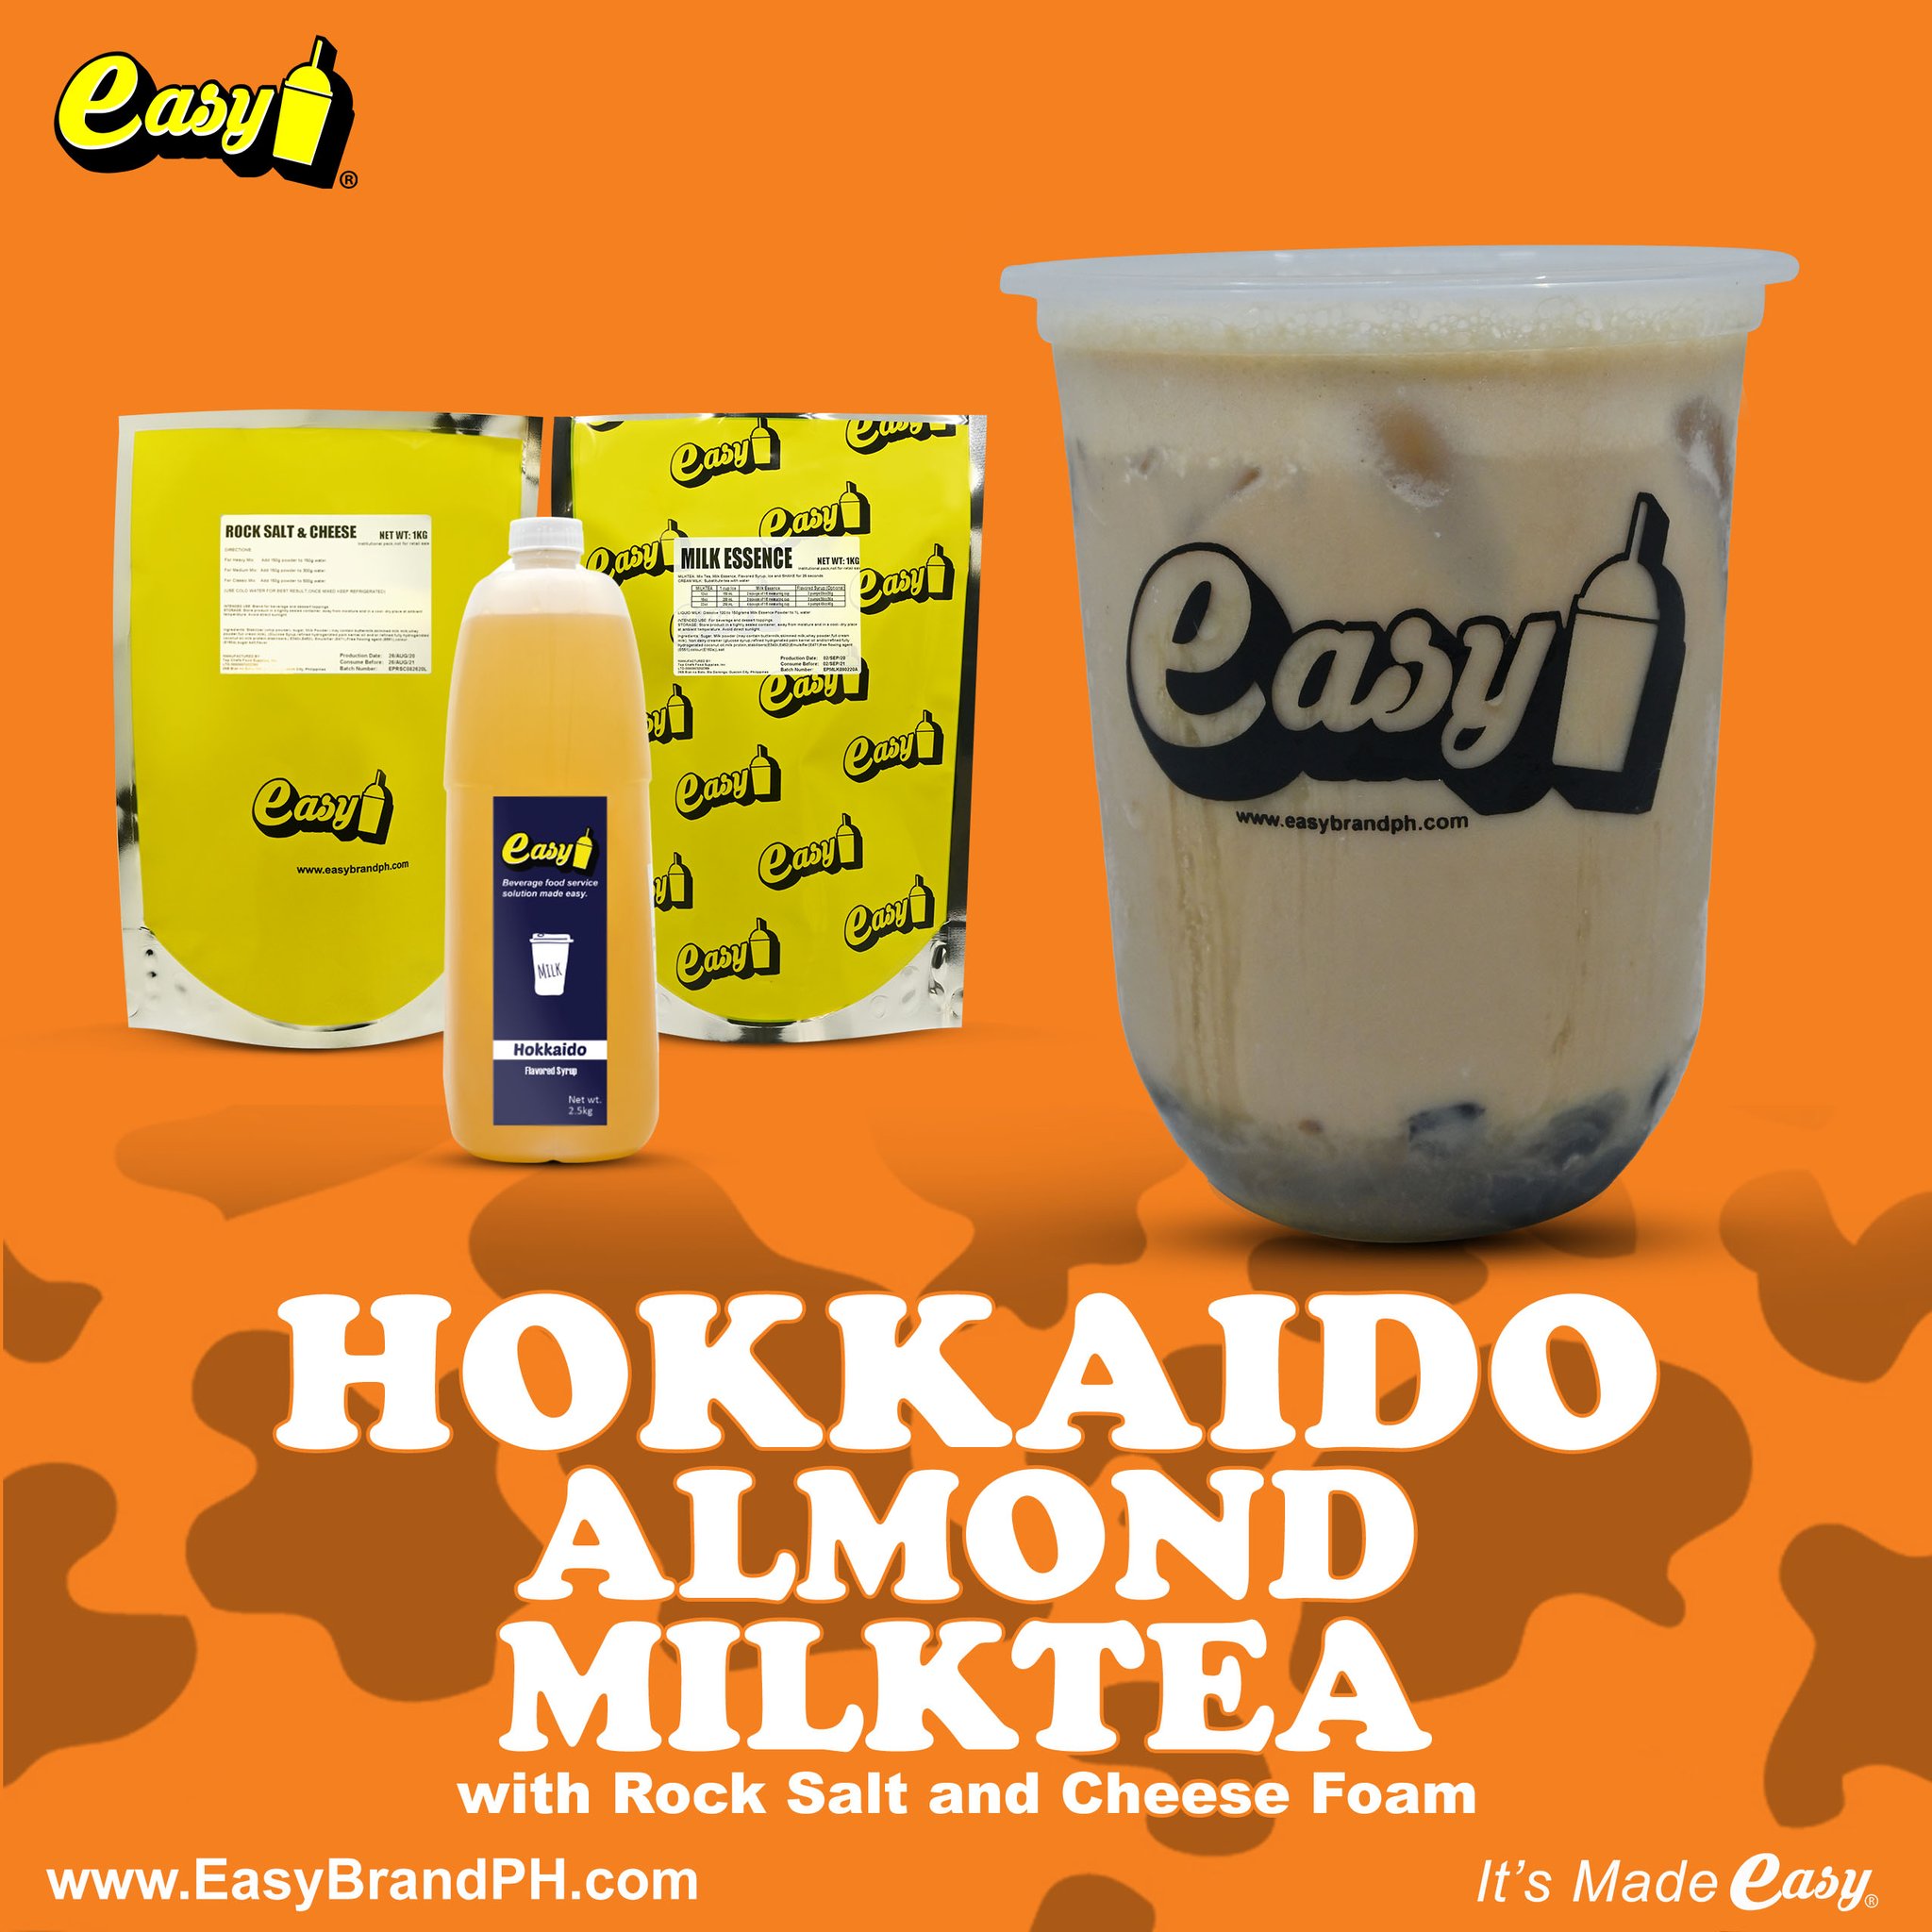 Hokkaido Almond Milktea